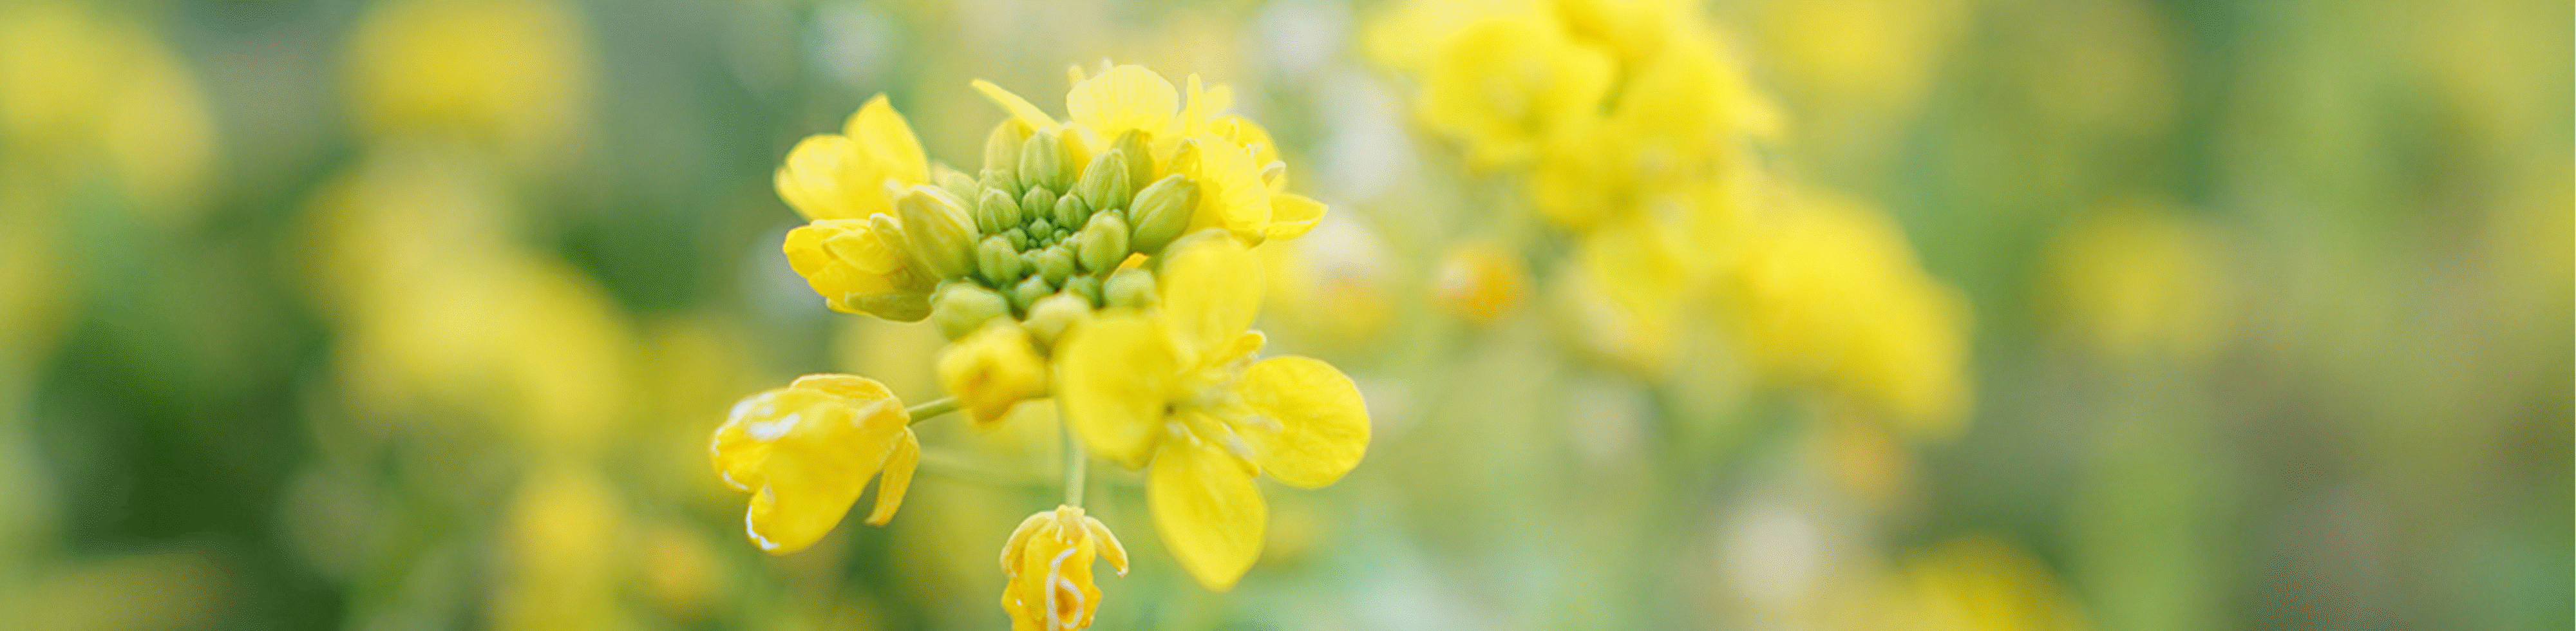 Slika rumenih rož